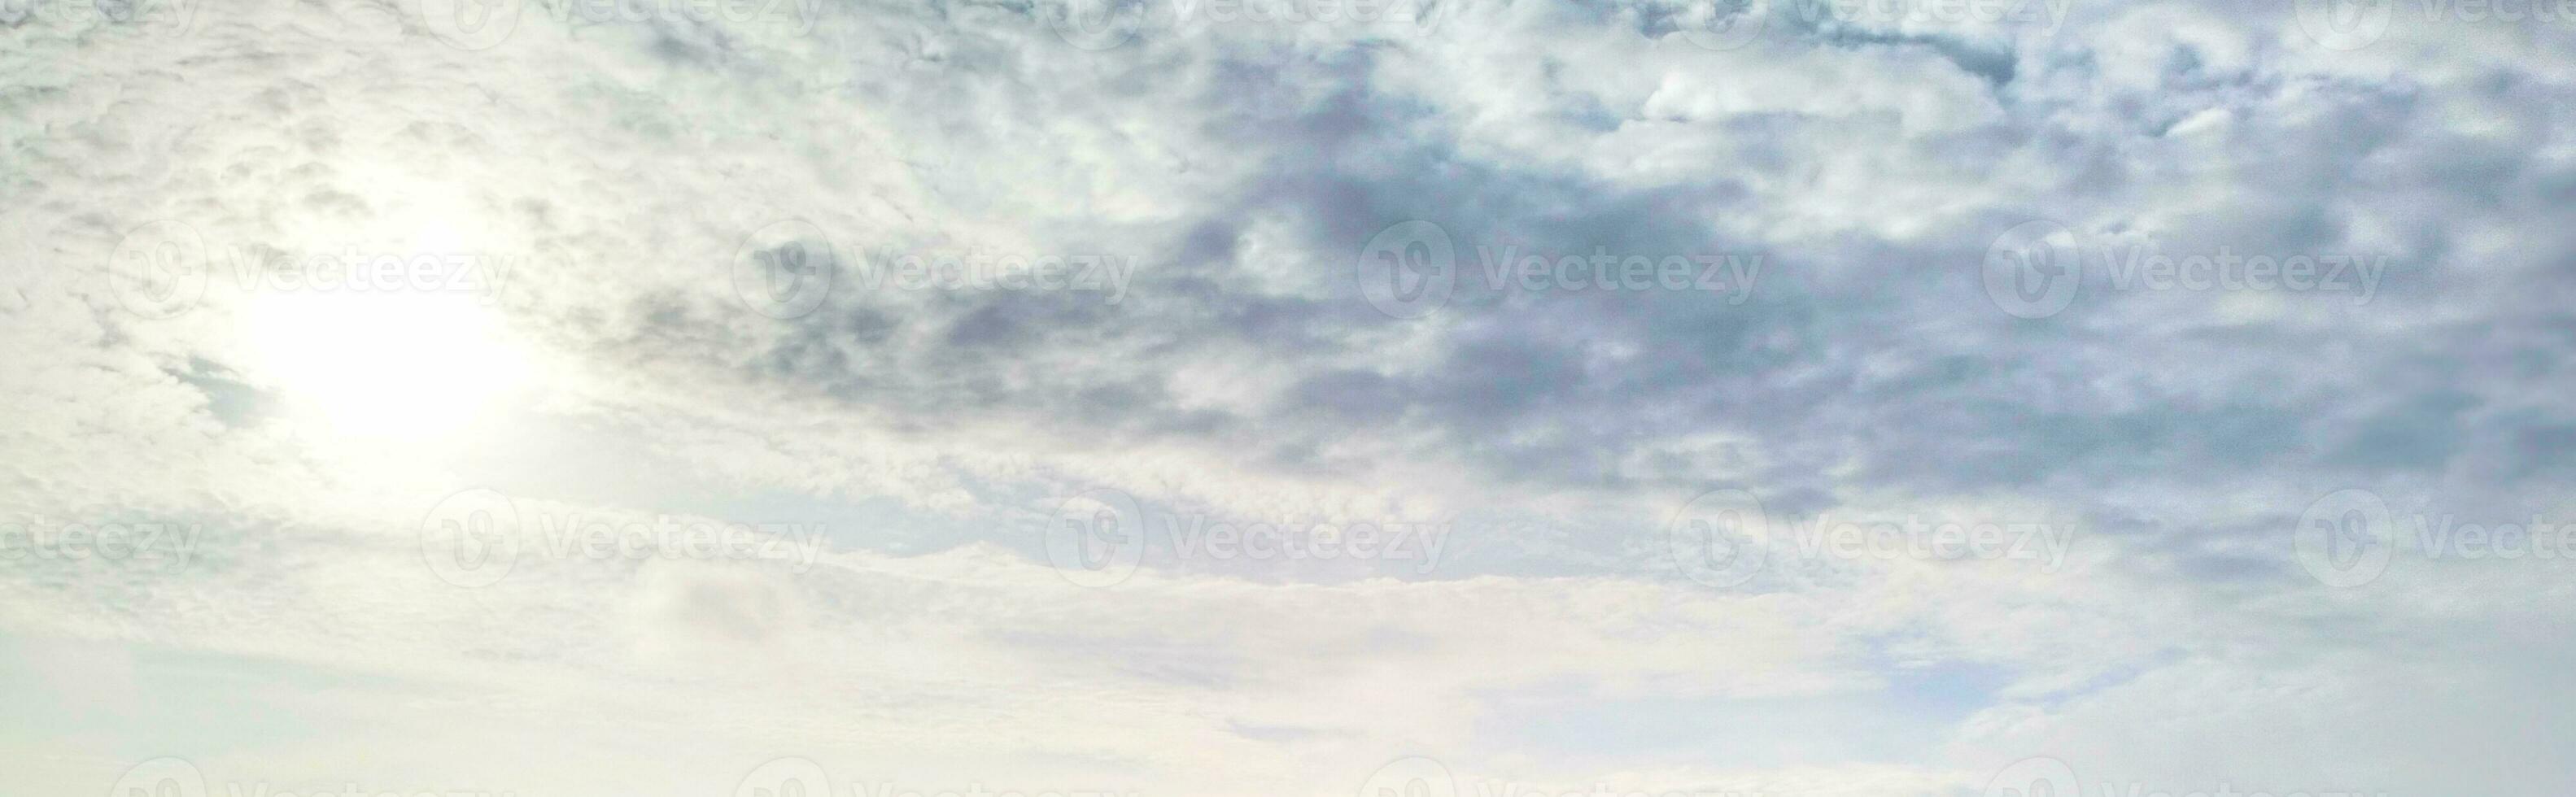 naturaleza imagen, nubes en el cielo foto